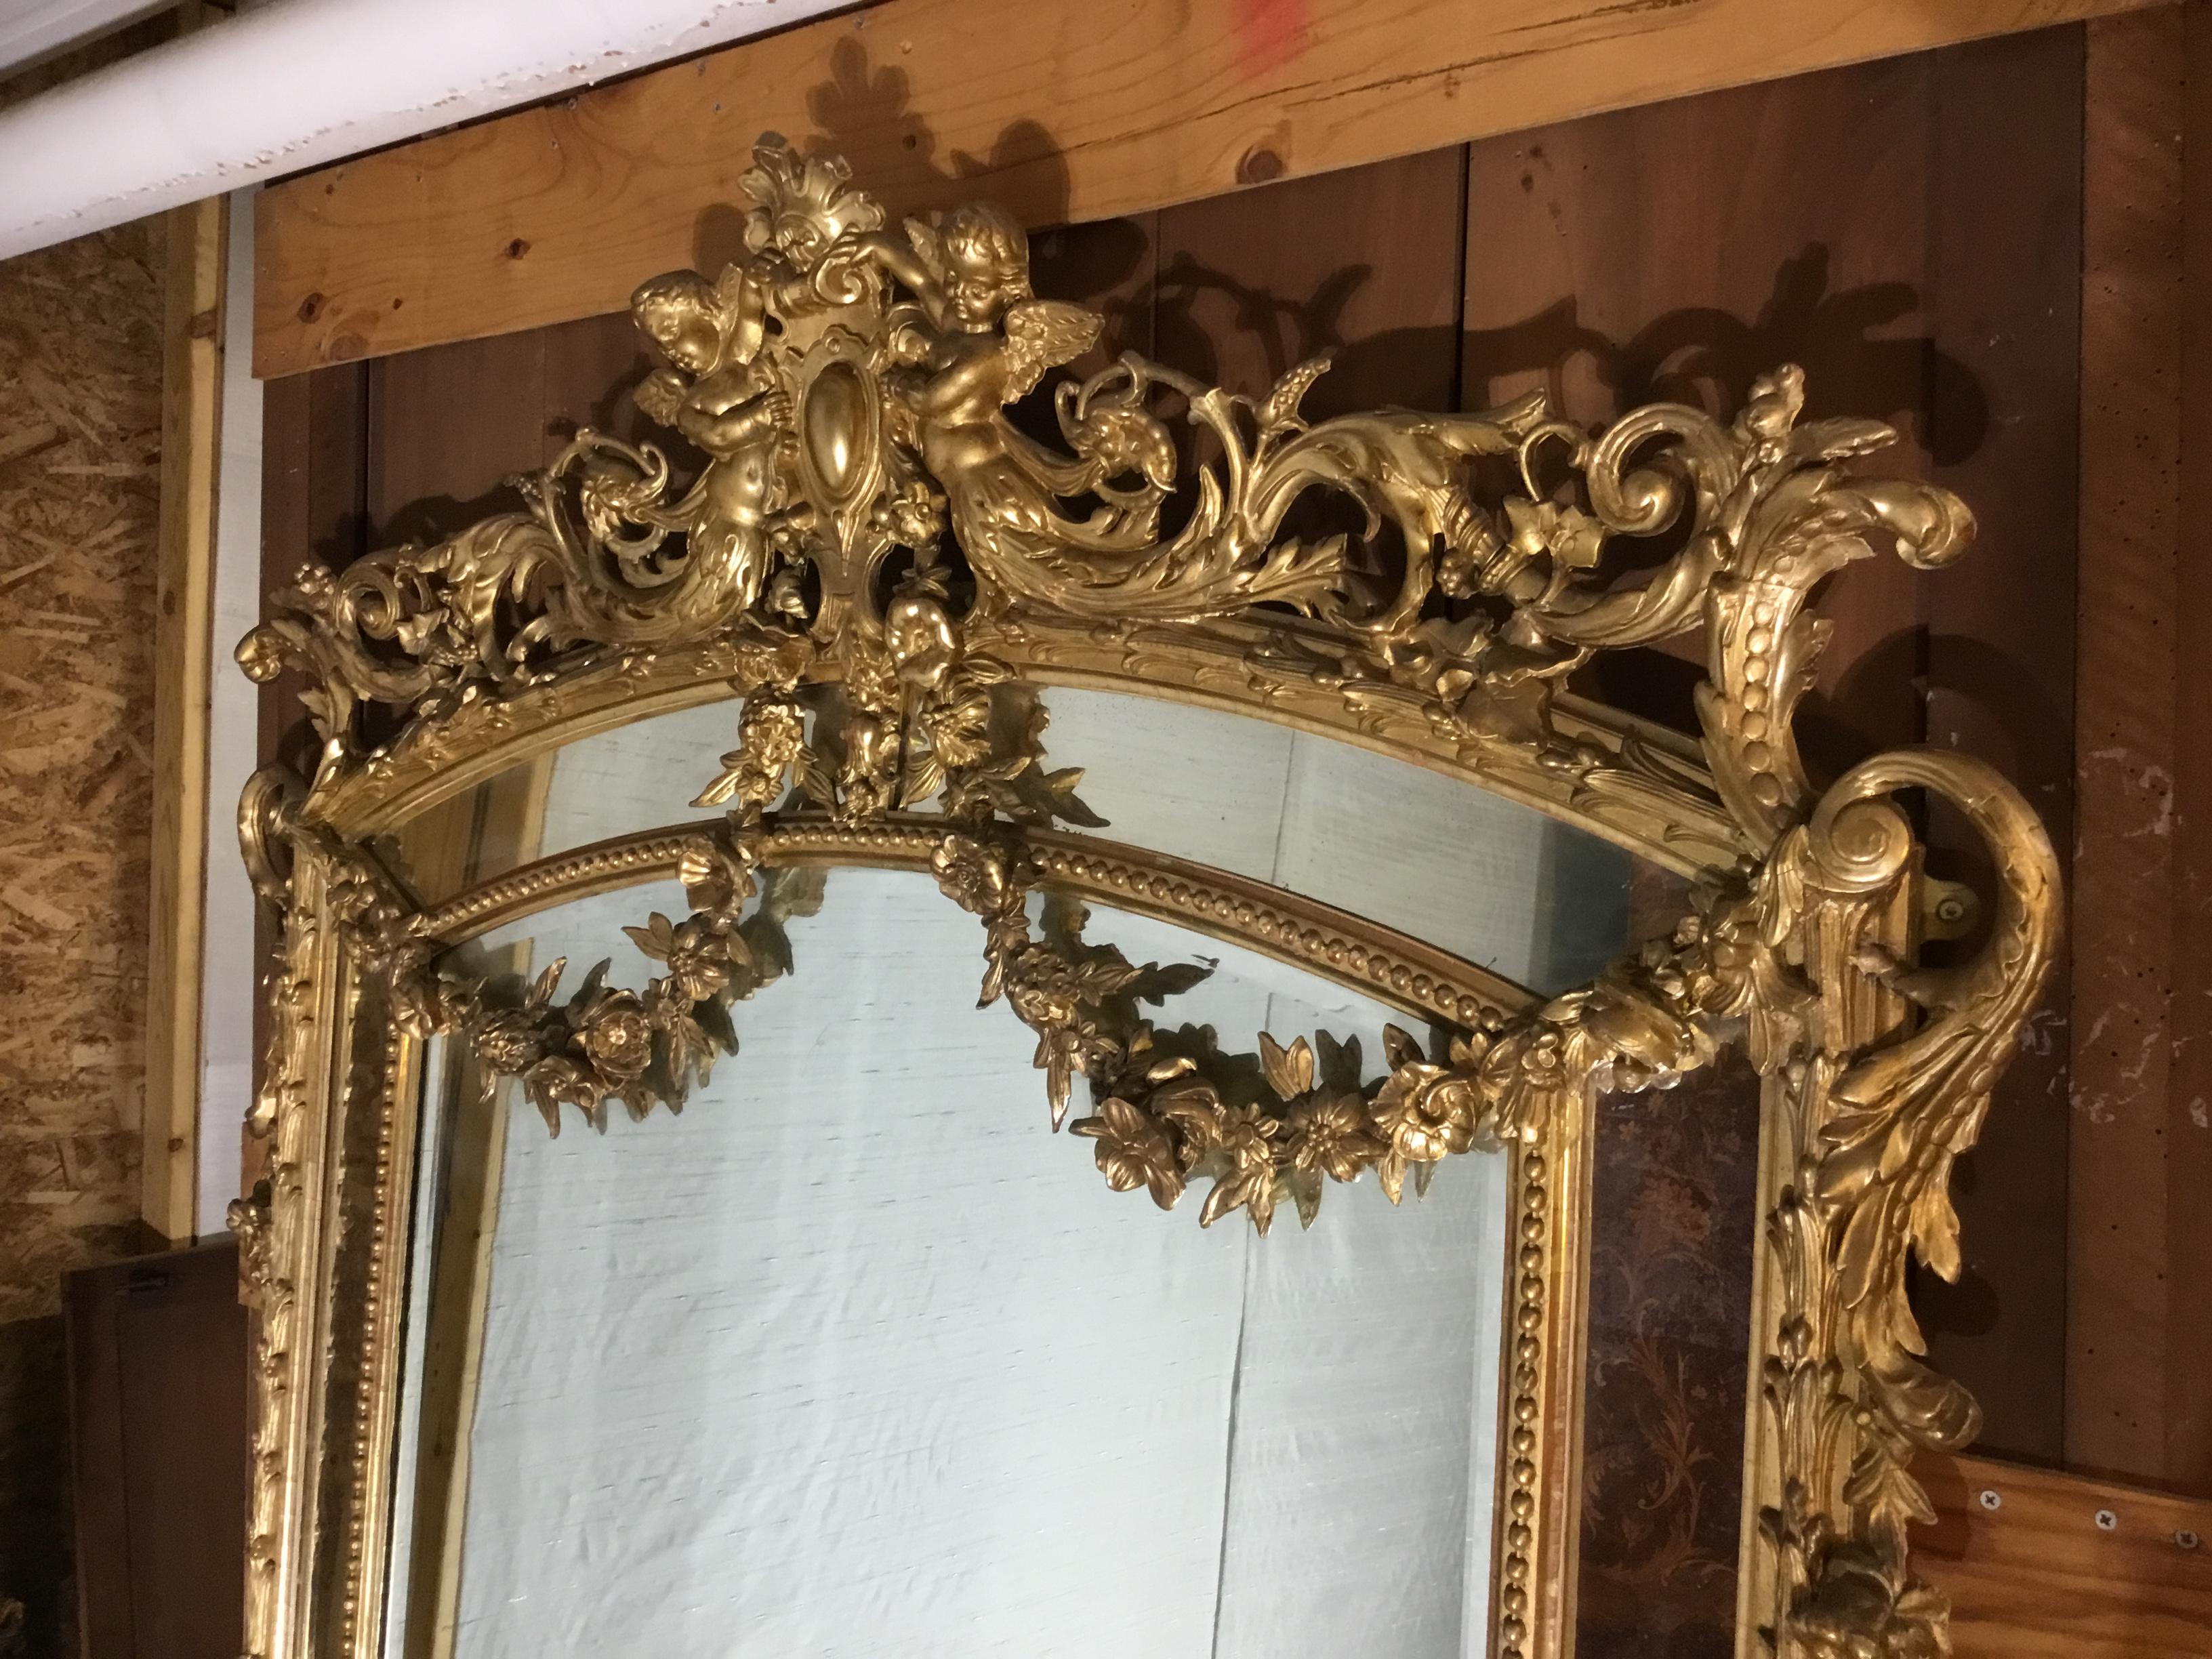 Hier ist eine schöne antike 19. Jahrhundert Französisch vergoldet parecloses Spiegel. Die Form des Spiegelrahmens und die verwendeten Verzierungen sind typisch für die Zeit des Louis XVI. Der Spiegelrahmen hat eine zentrale Glasplatte mit